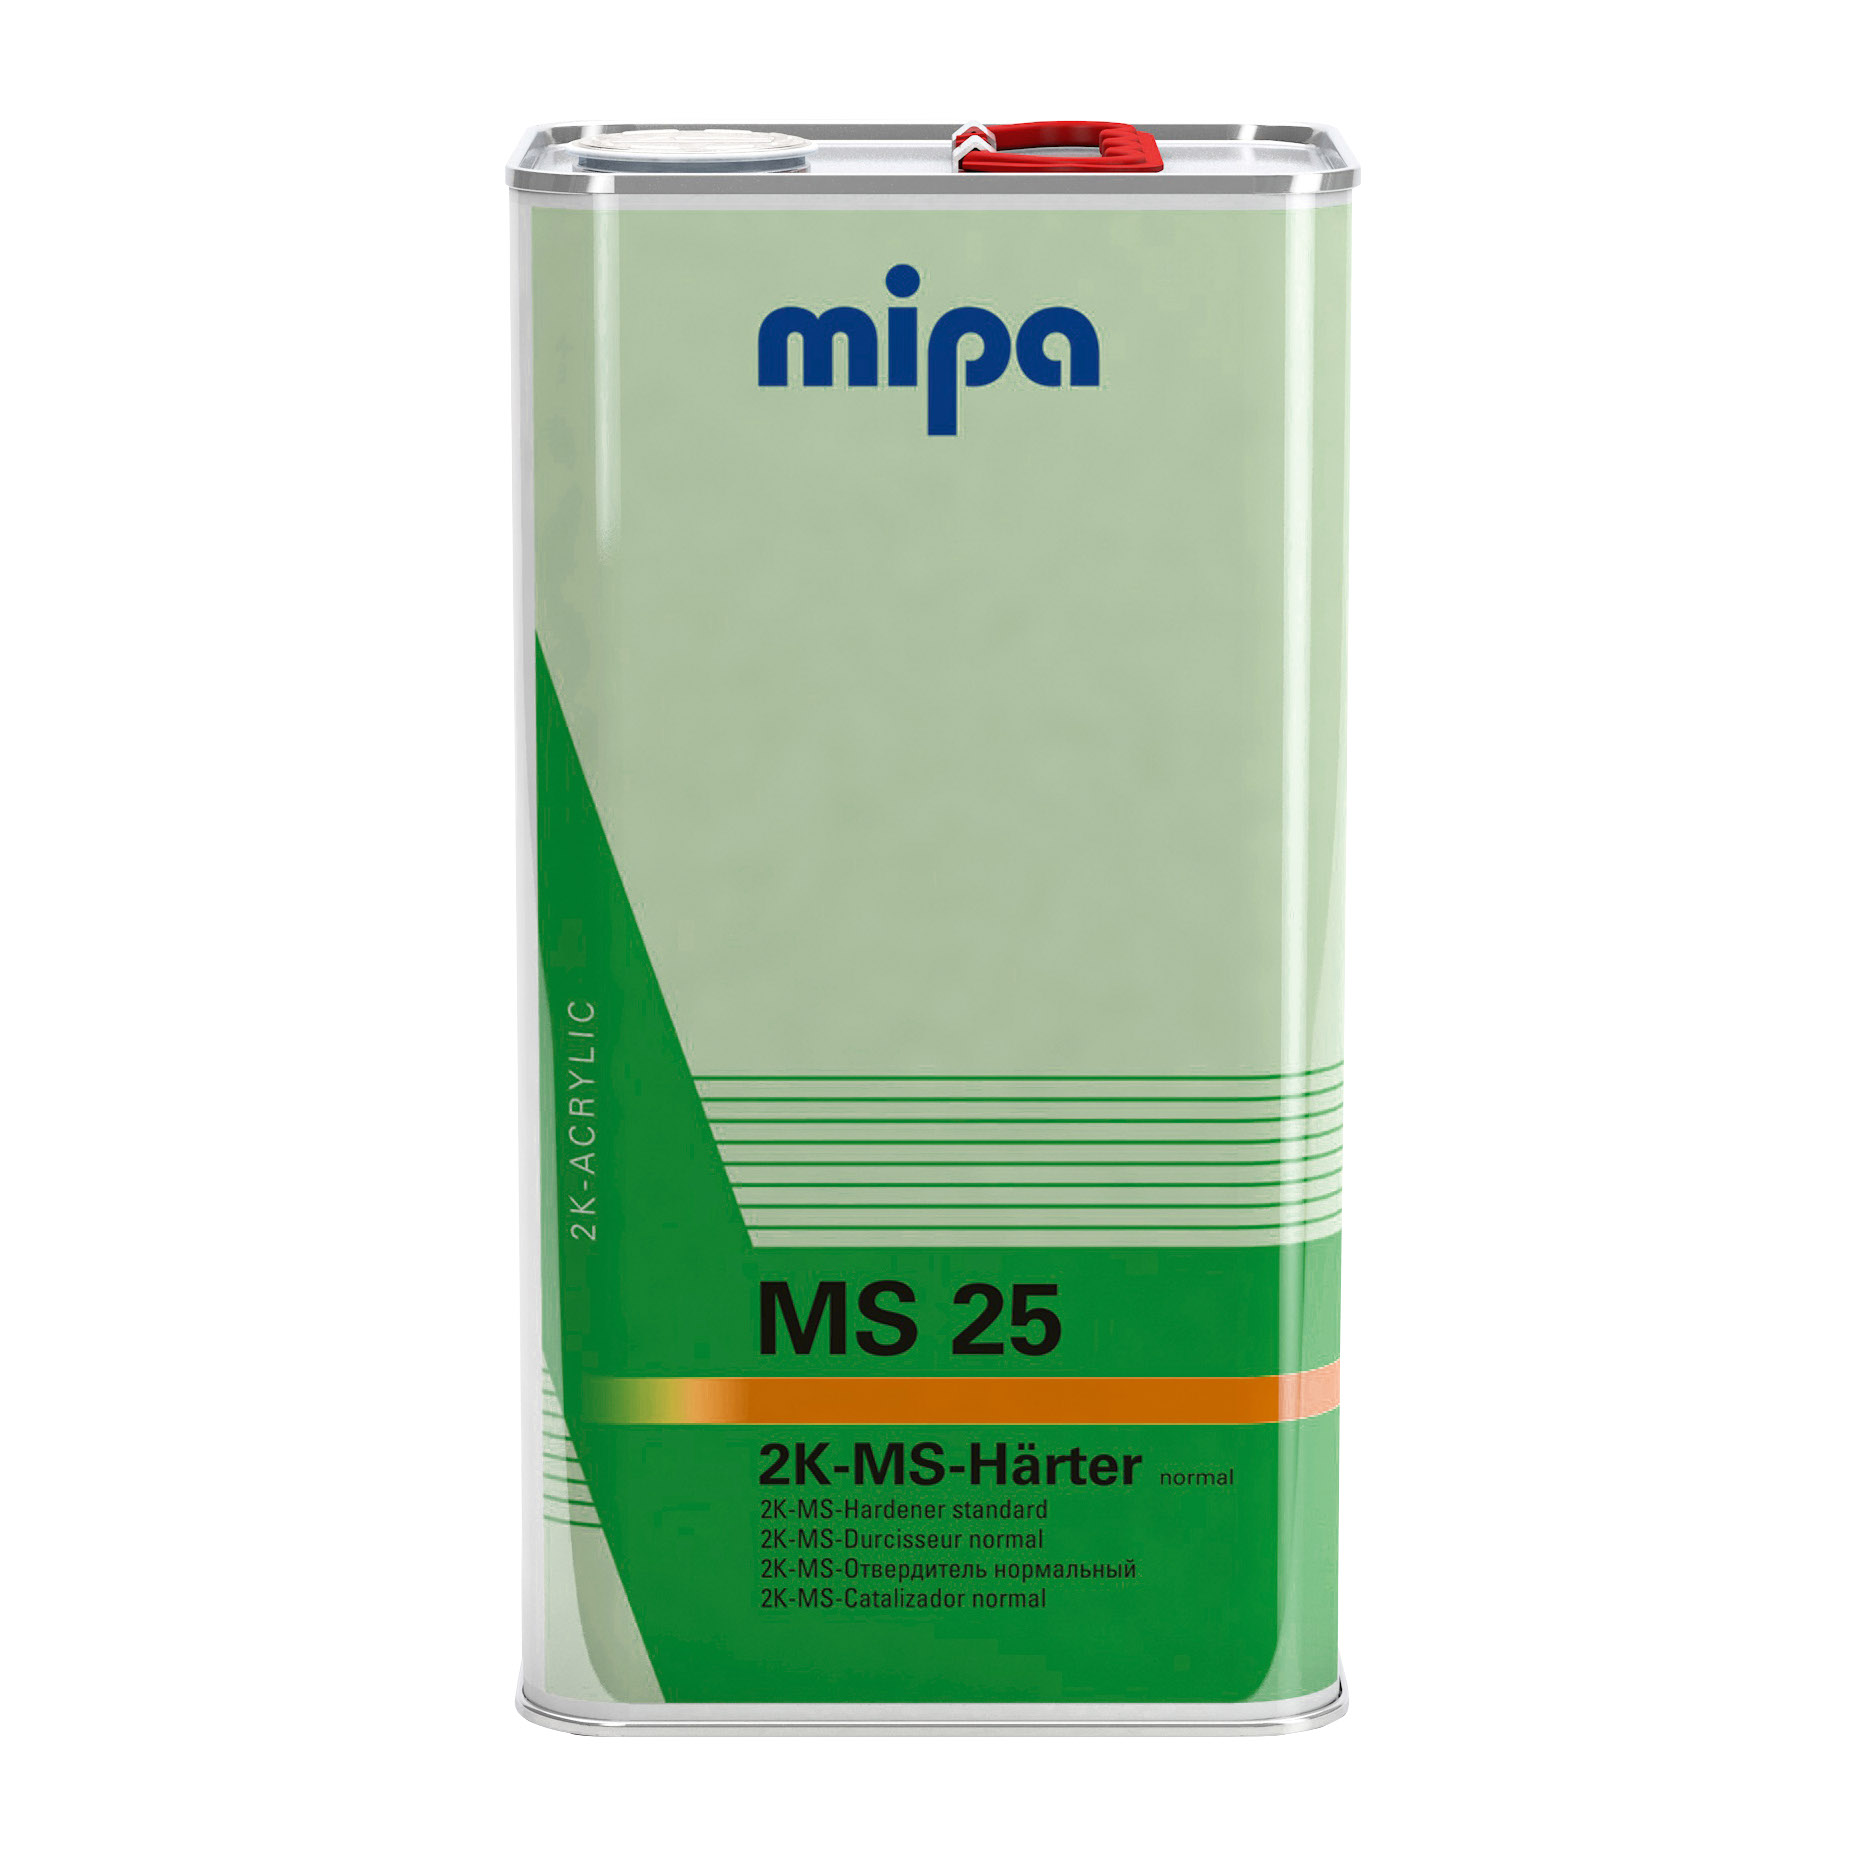 Mipa 2K-MS-Härter MS 25 normal, 5 l